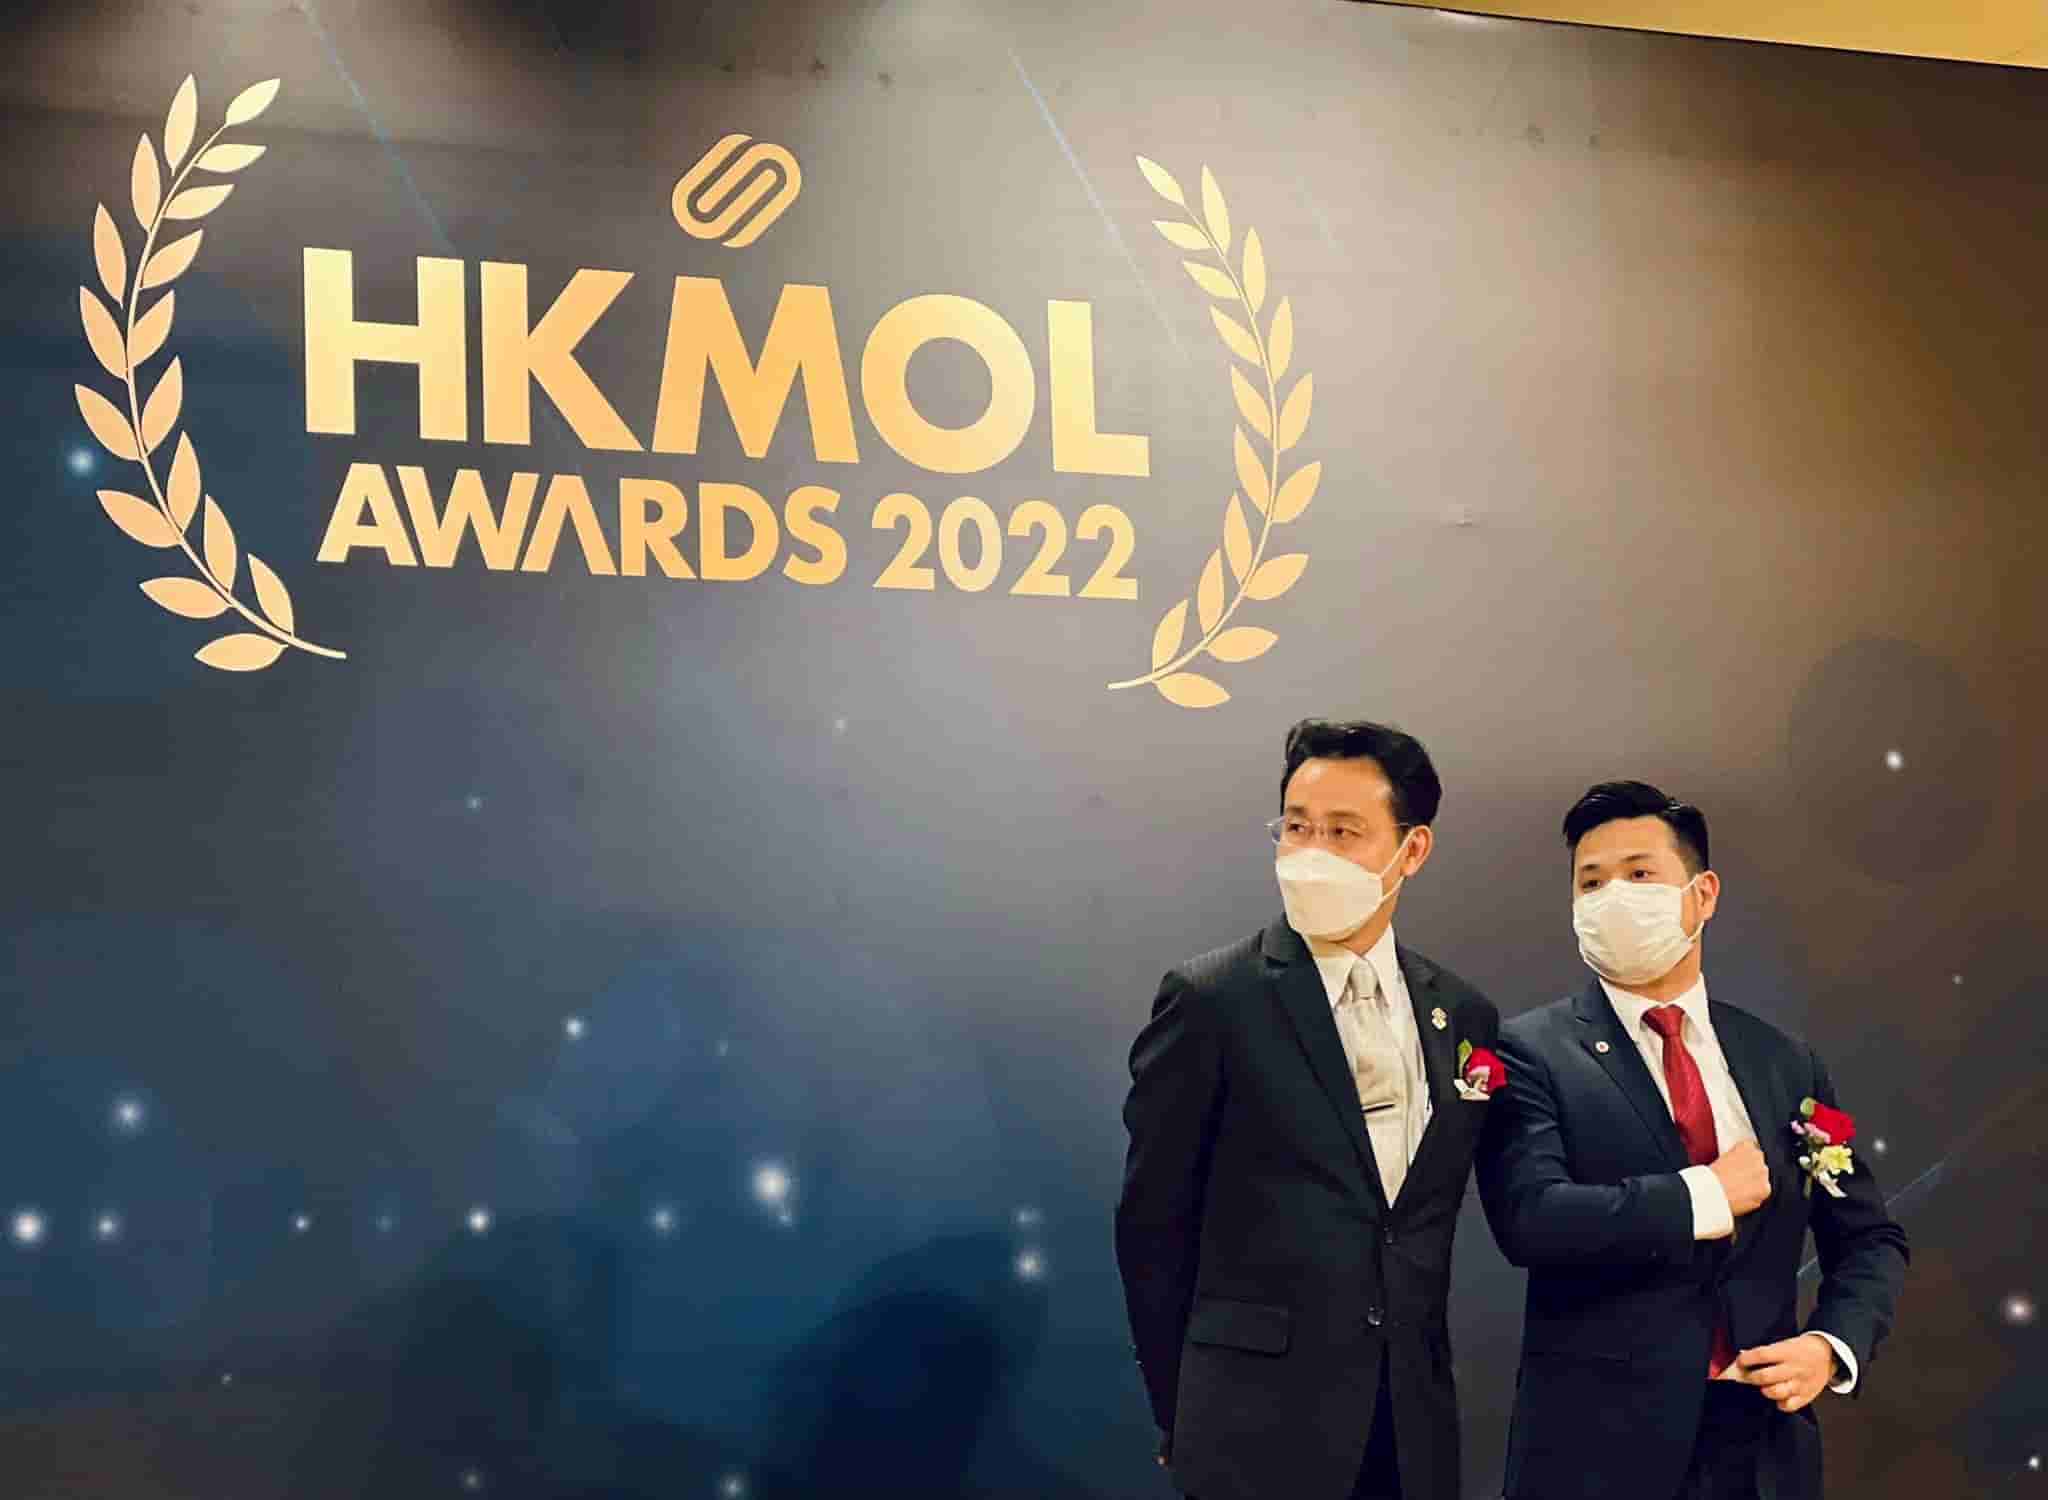 香港青年創業家總商會 - Corphub HKMOL Awards 2022 頒獎嘉賓